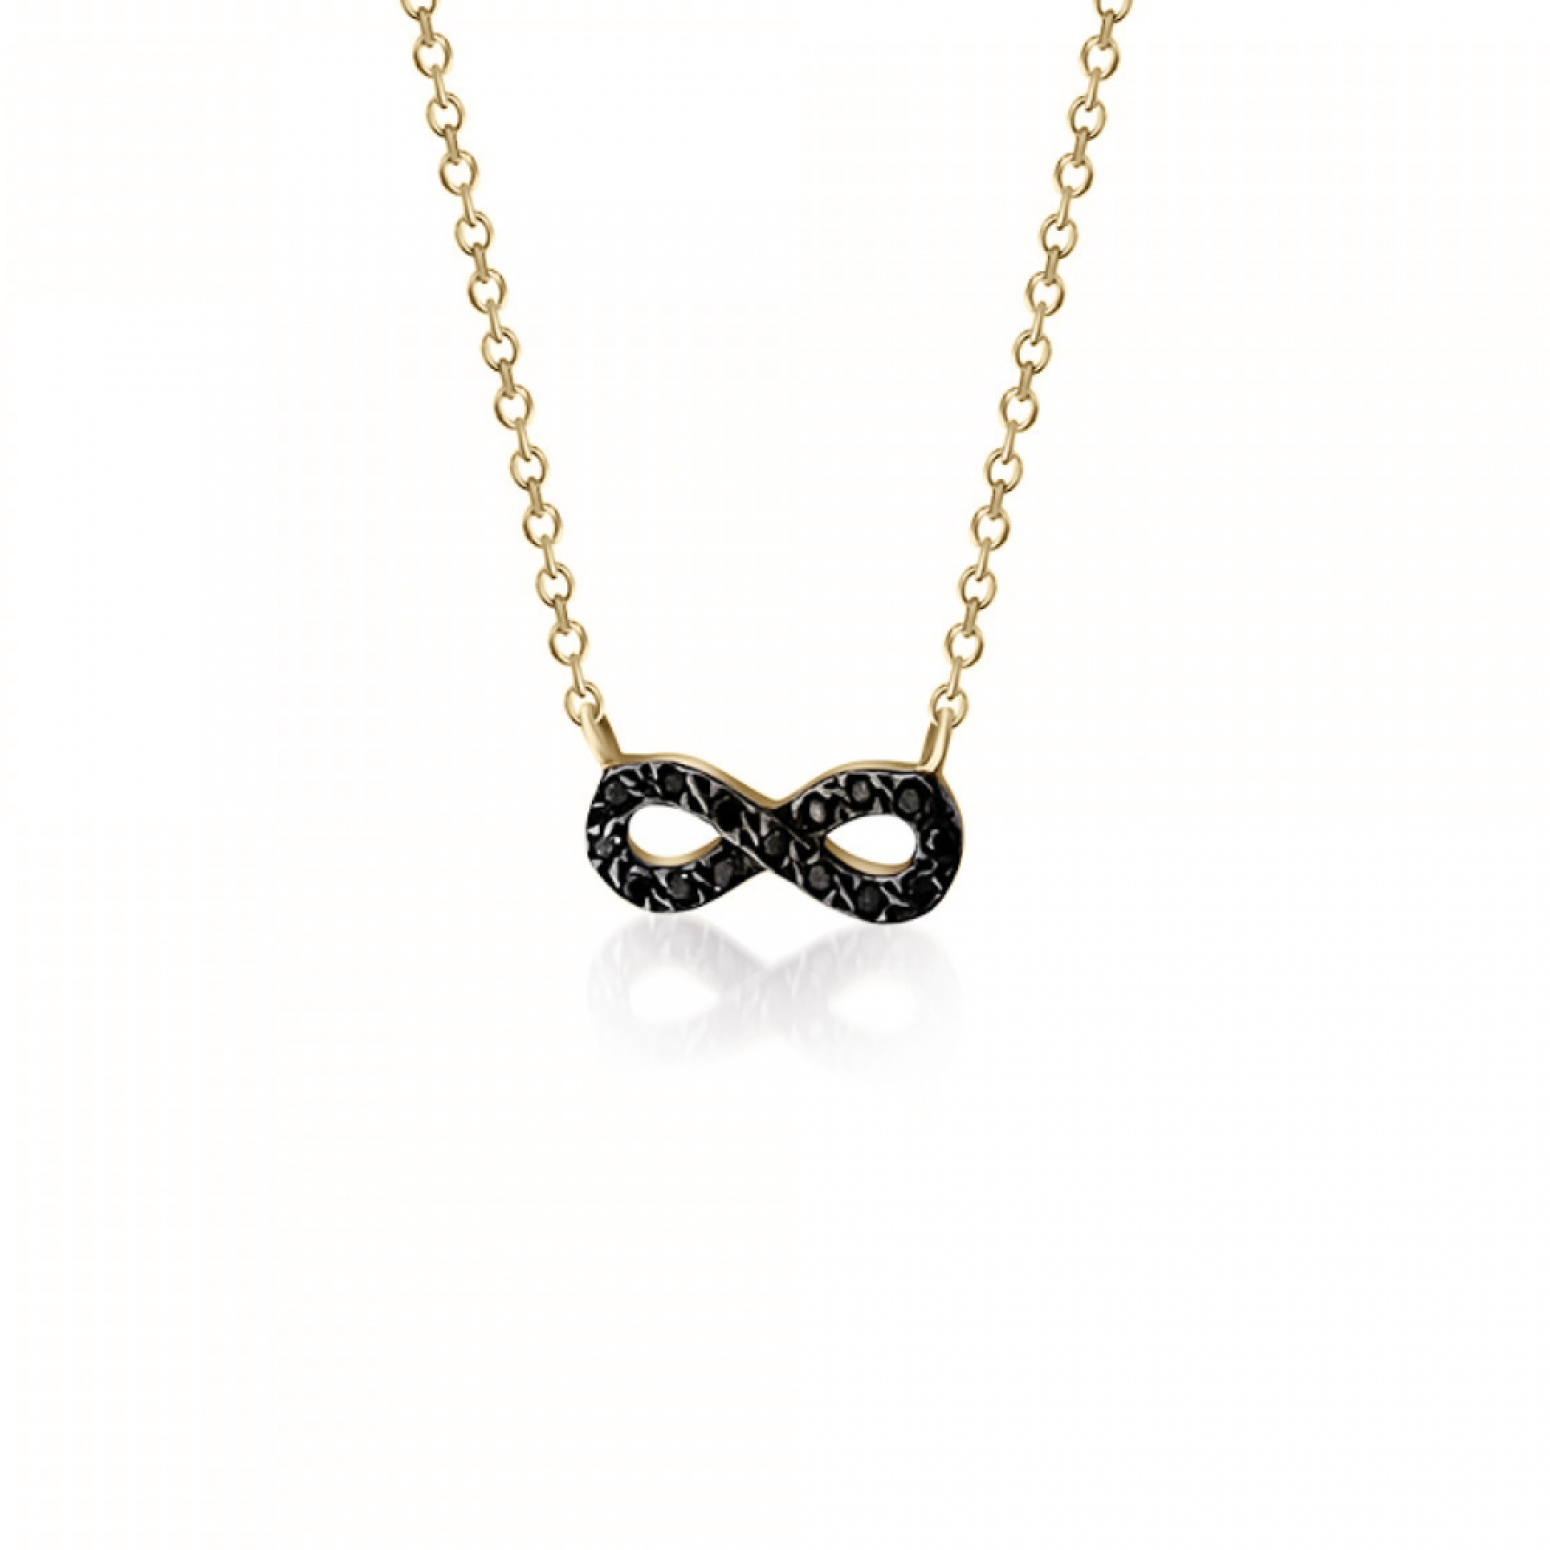 Infinity necklace, Κ9 gold with black zircon, ko4143 NECKLACES Κοσμηματα - chrilia.gr